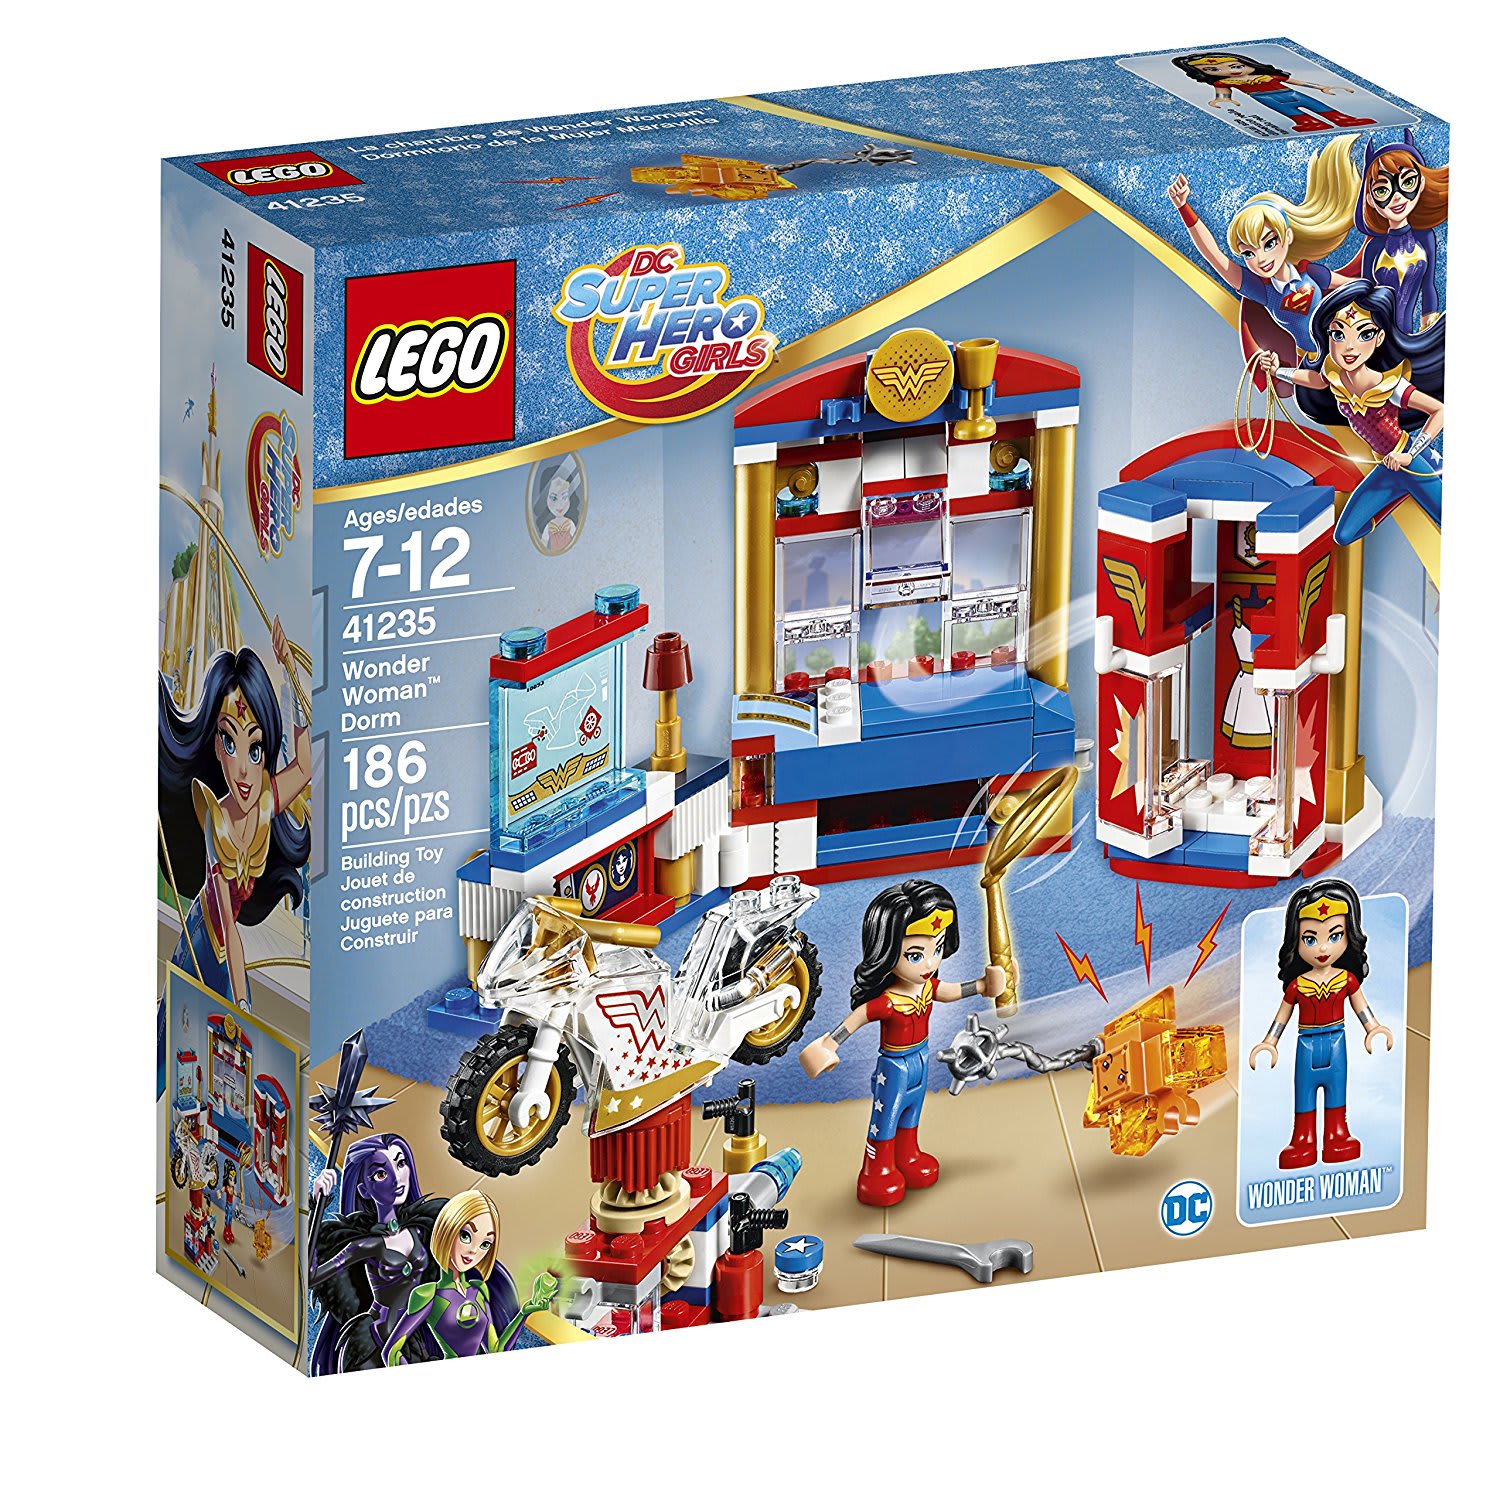 Wonder Woman LEGO set